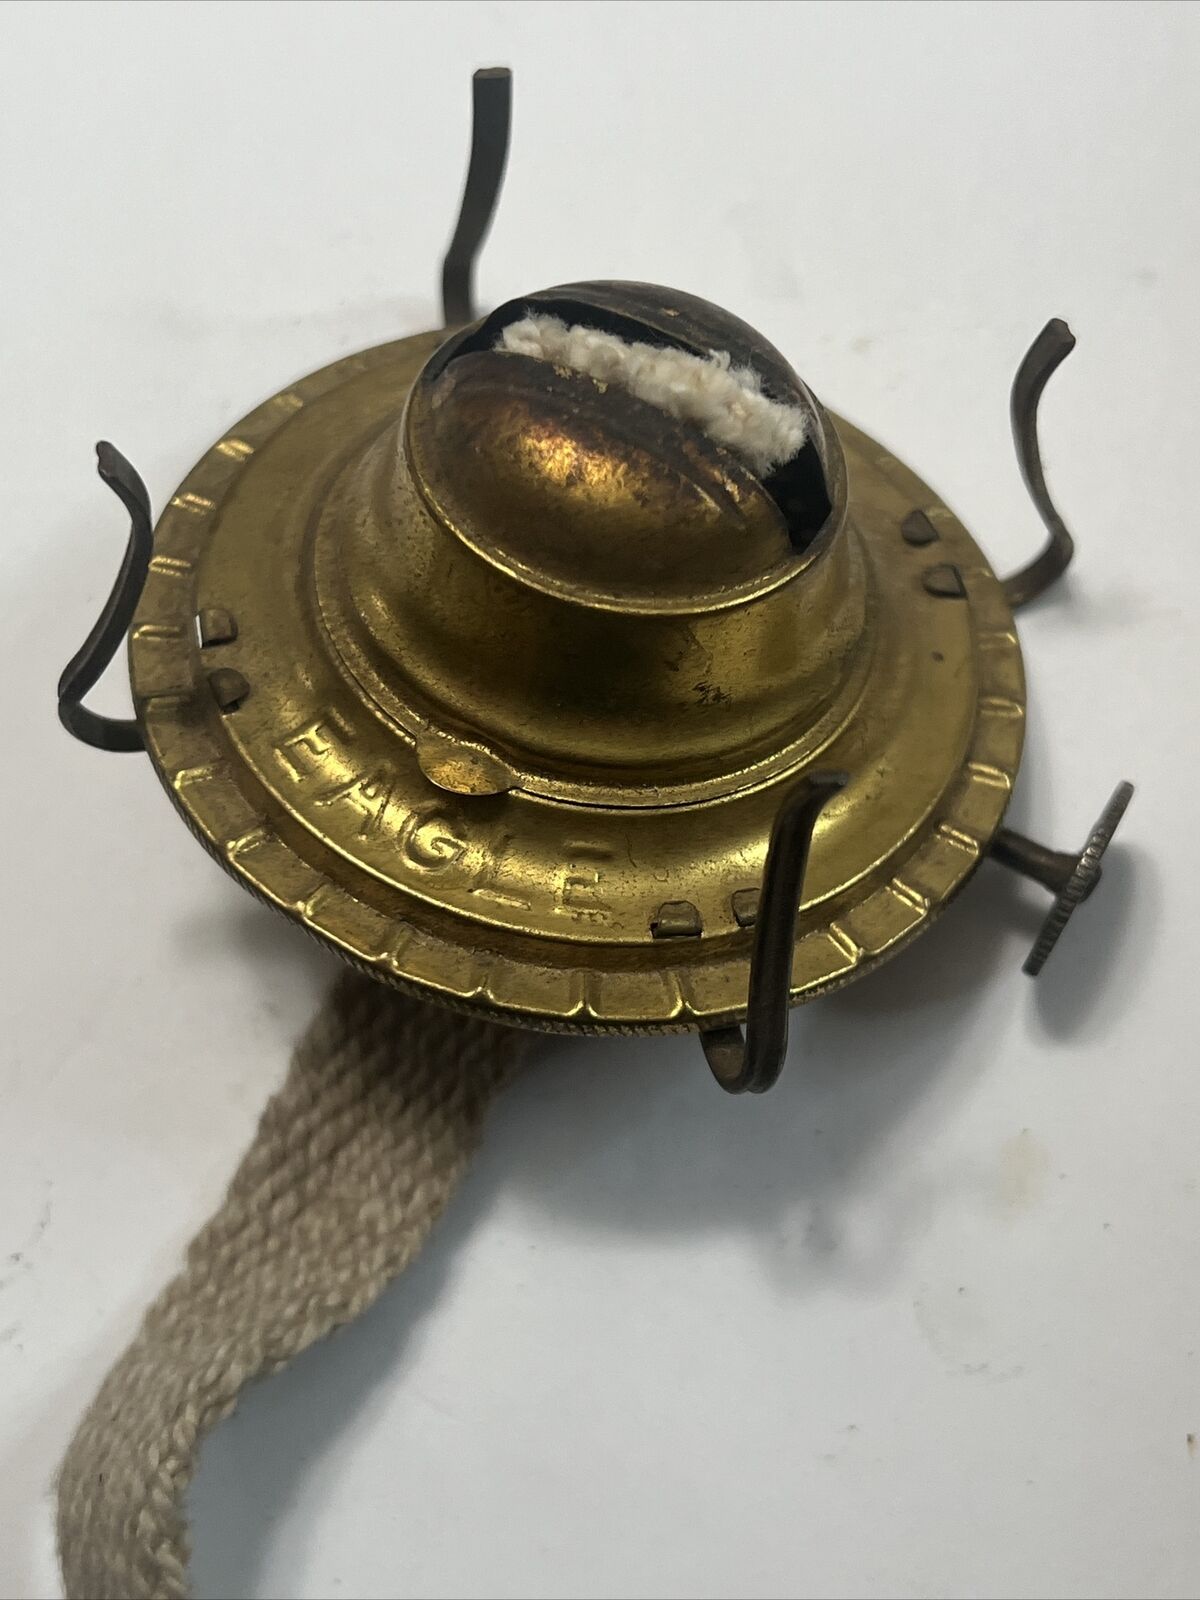 Vintage Antique P&A EAGLE Brass Oil Lamp 7/8”  #1 Burner 2 1/2” Glass Chimney